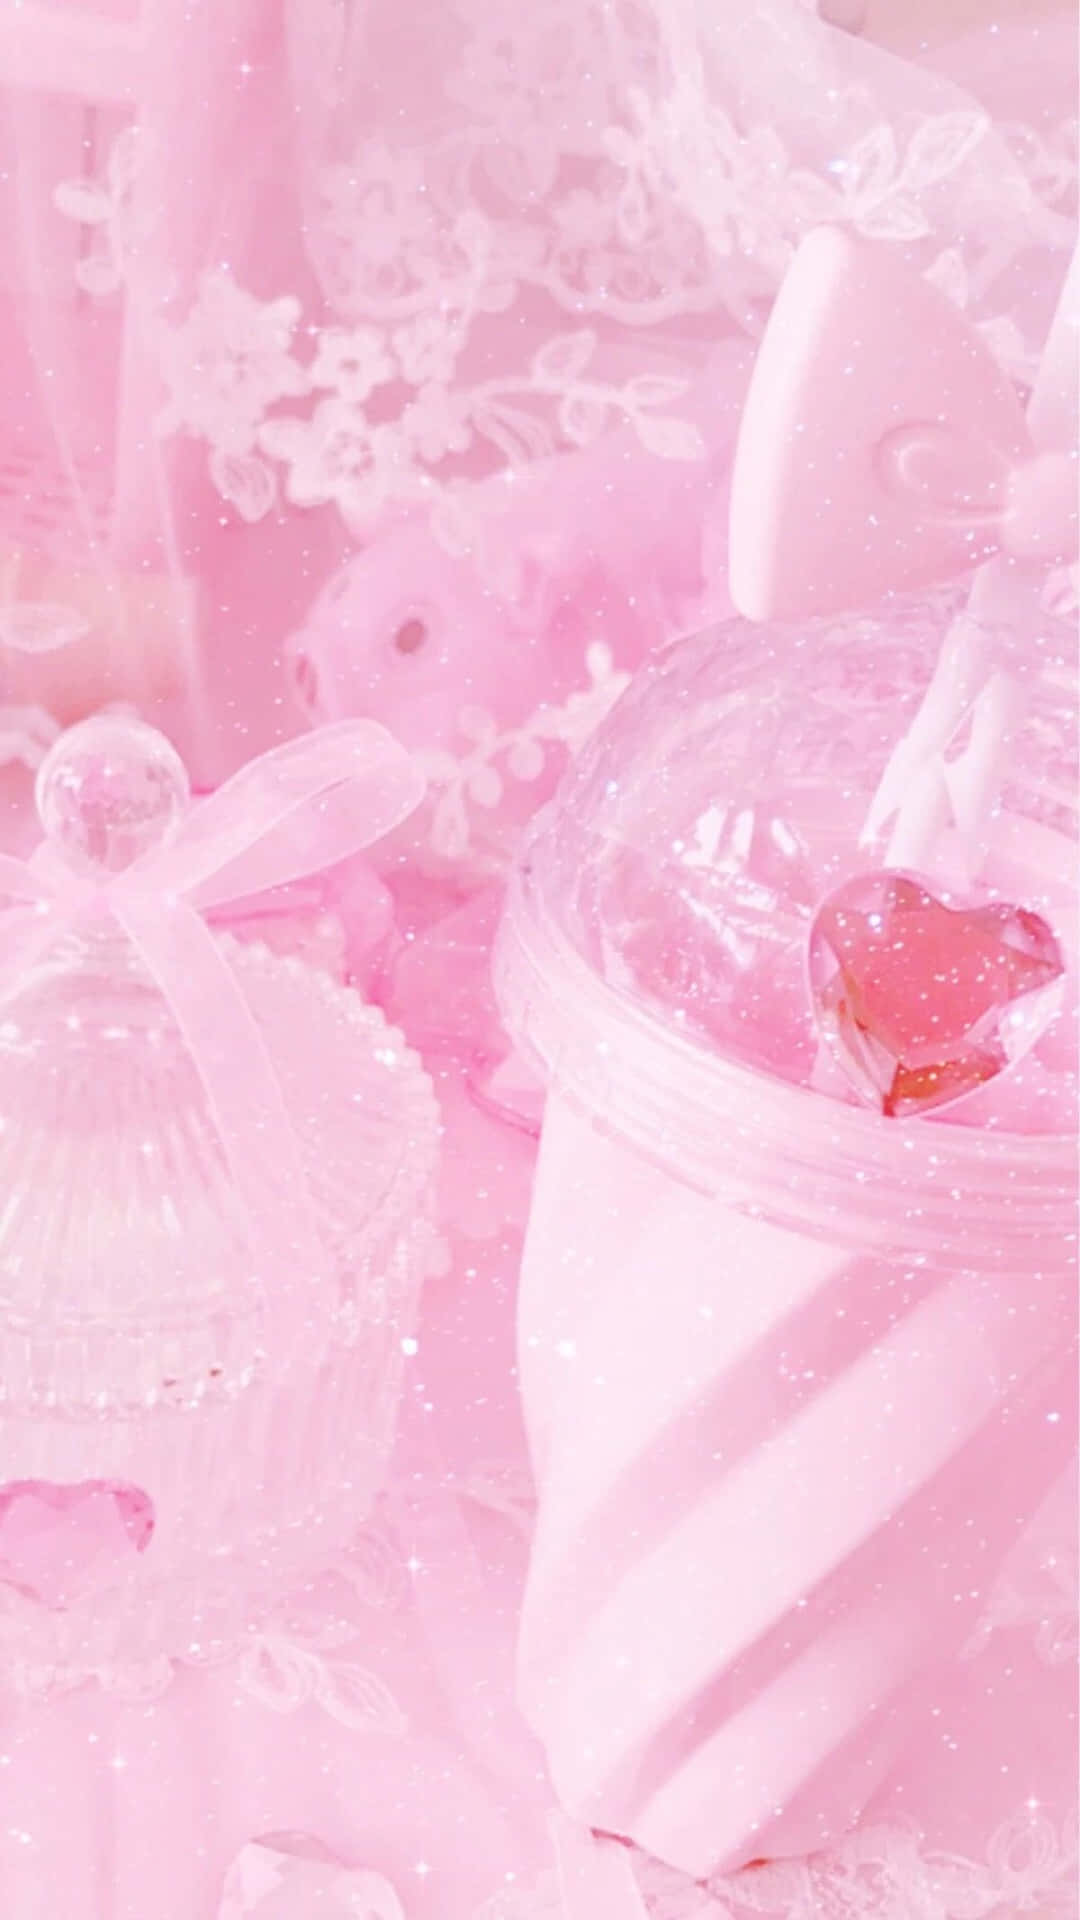 Soft, calming tones of pink evoke a sense of joy. Wallpaper